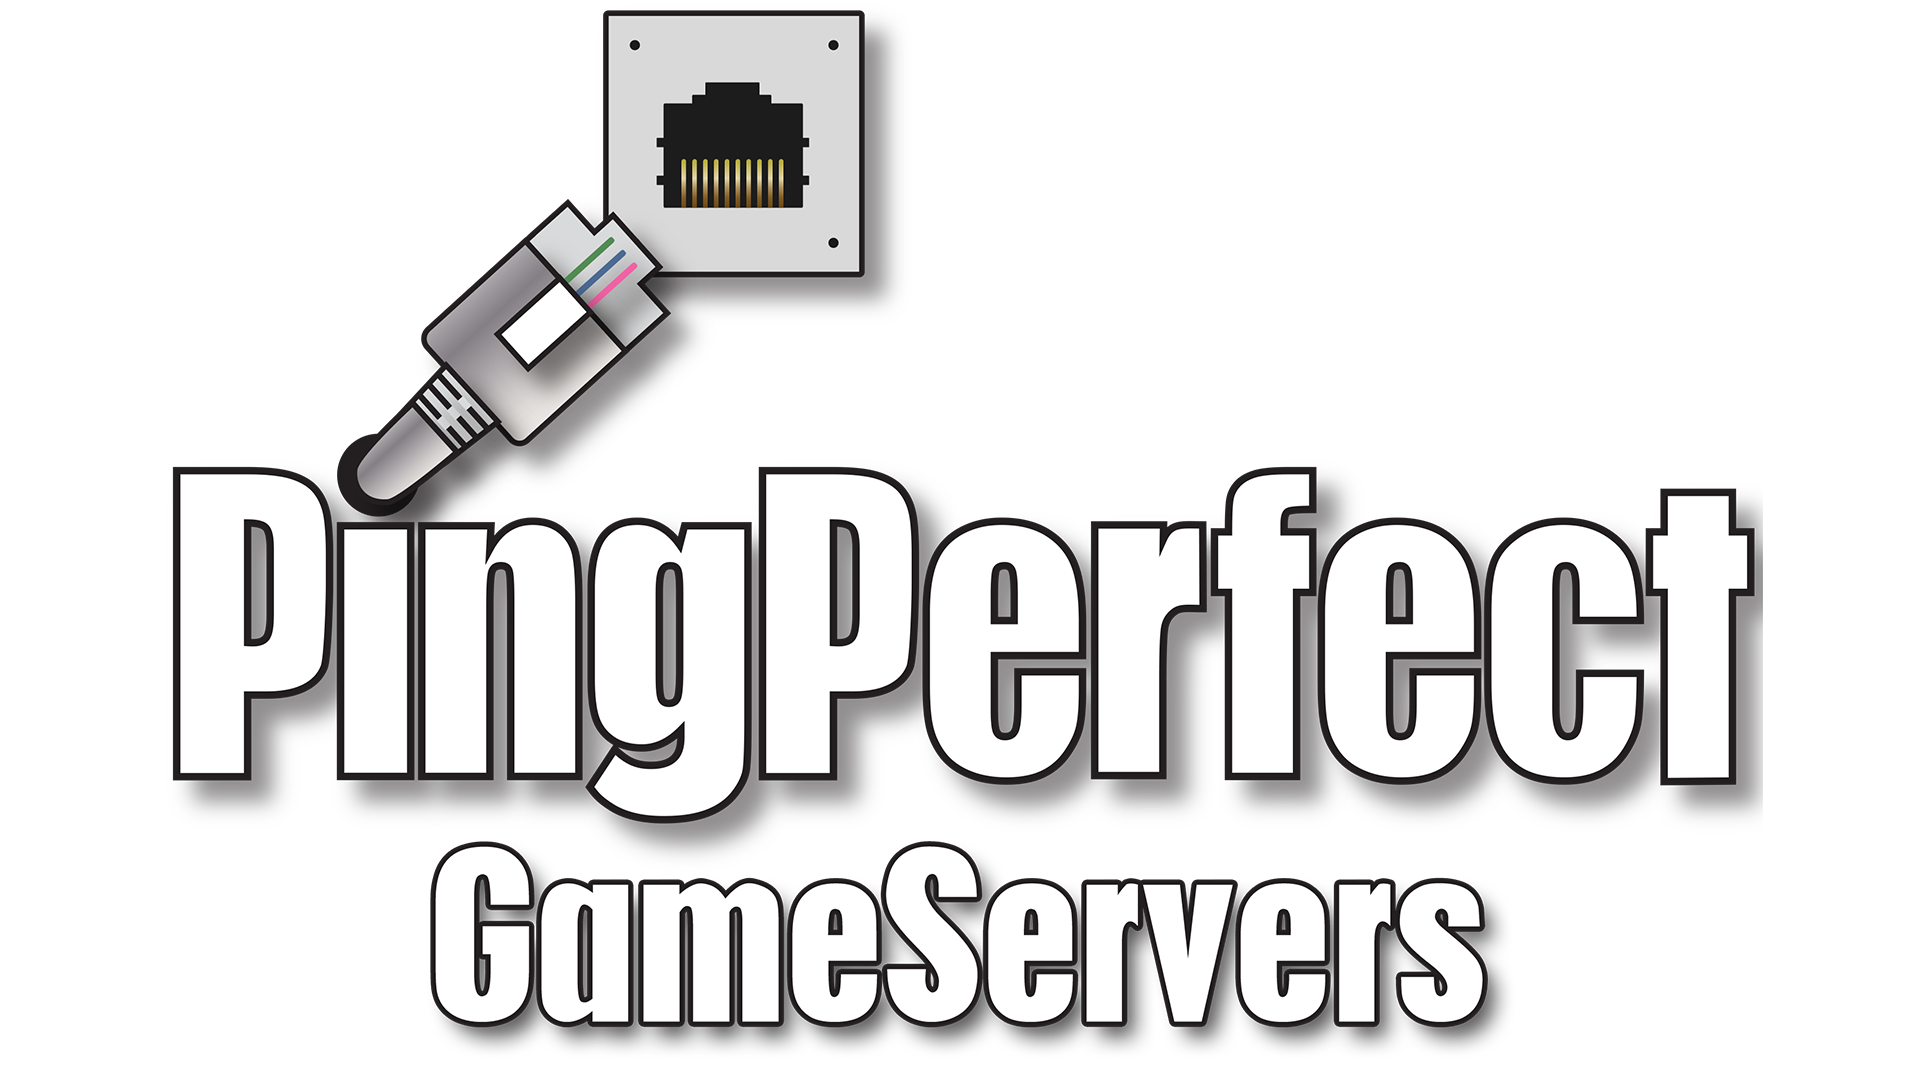 Game server com. Сервера. Картинка геймс для сервера. Гейм сервер. ГПО игра сервер.